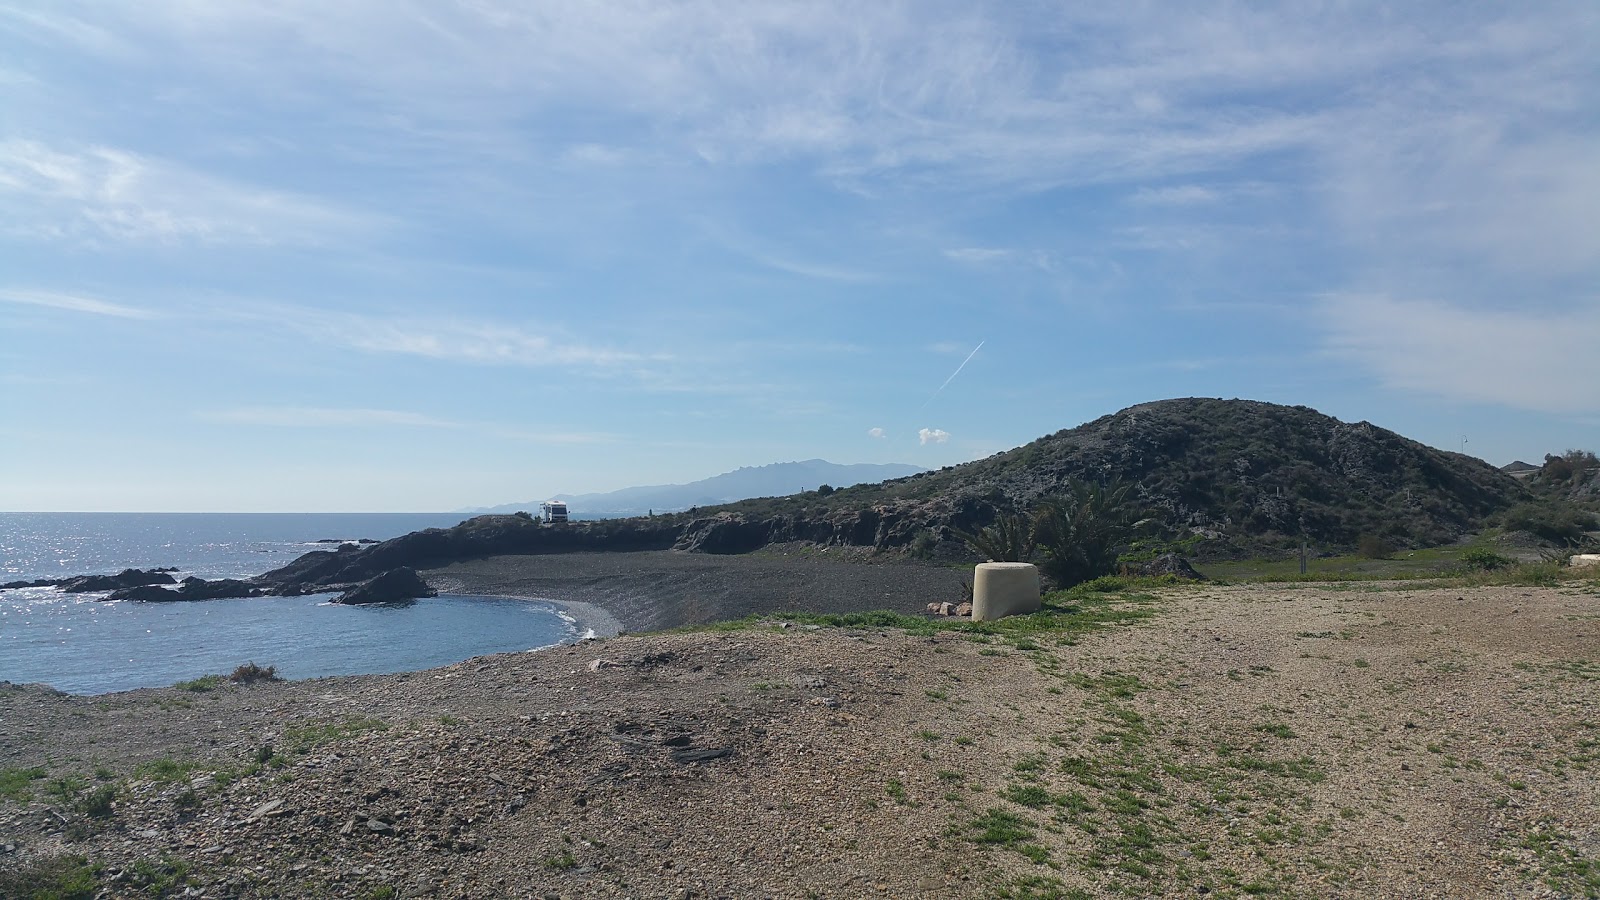 Playa la Dolores'in fotoğrafı çok temiz temizlik seviyesi ile